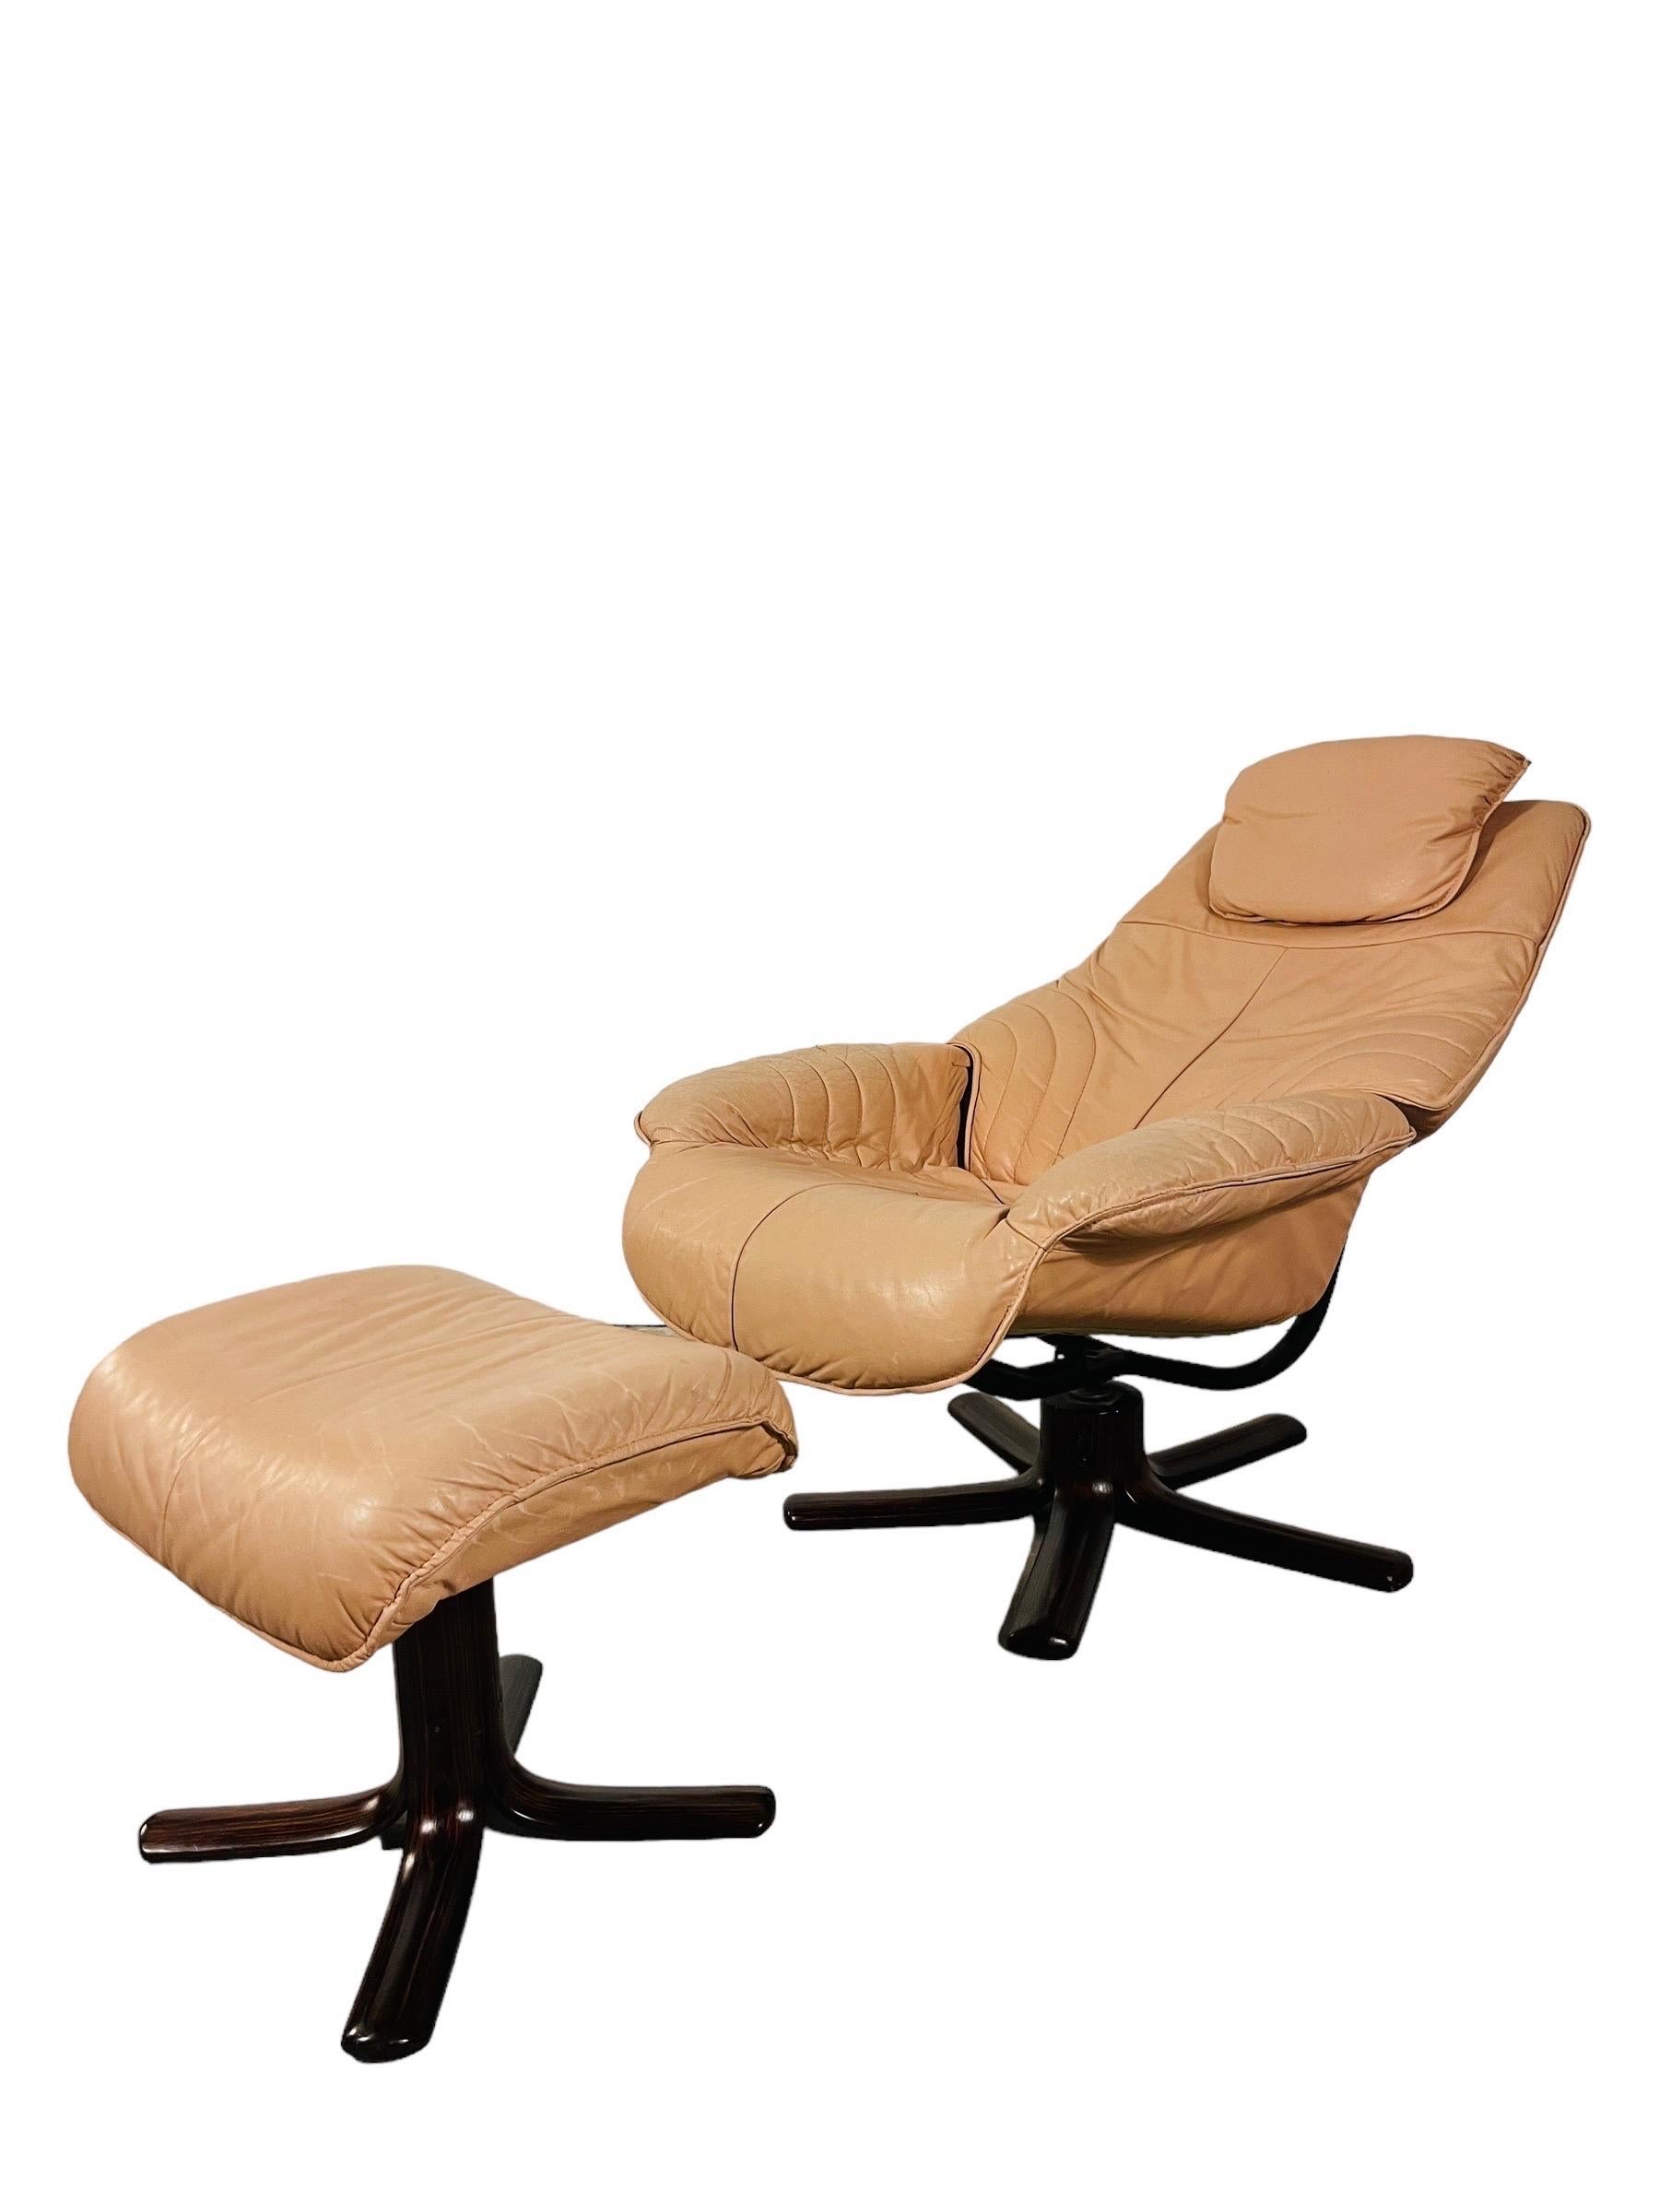 Entrez dans le monde du design norvégien classique avec cette chaise longue en cuir Hjellegjerde vintage et son ottoman. Fabriqué en Norvège, cet ensemble incarne le luxe et le confort. Le revêtement en cuir champagne souple témoigne de la qualité,